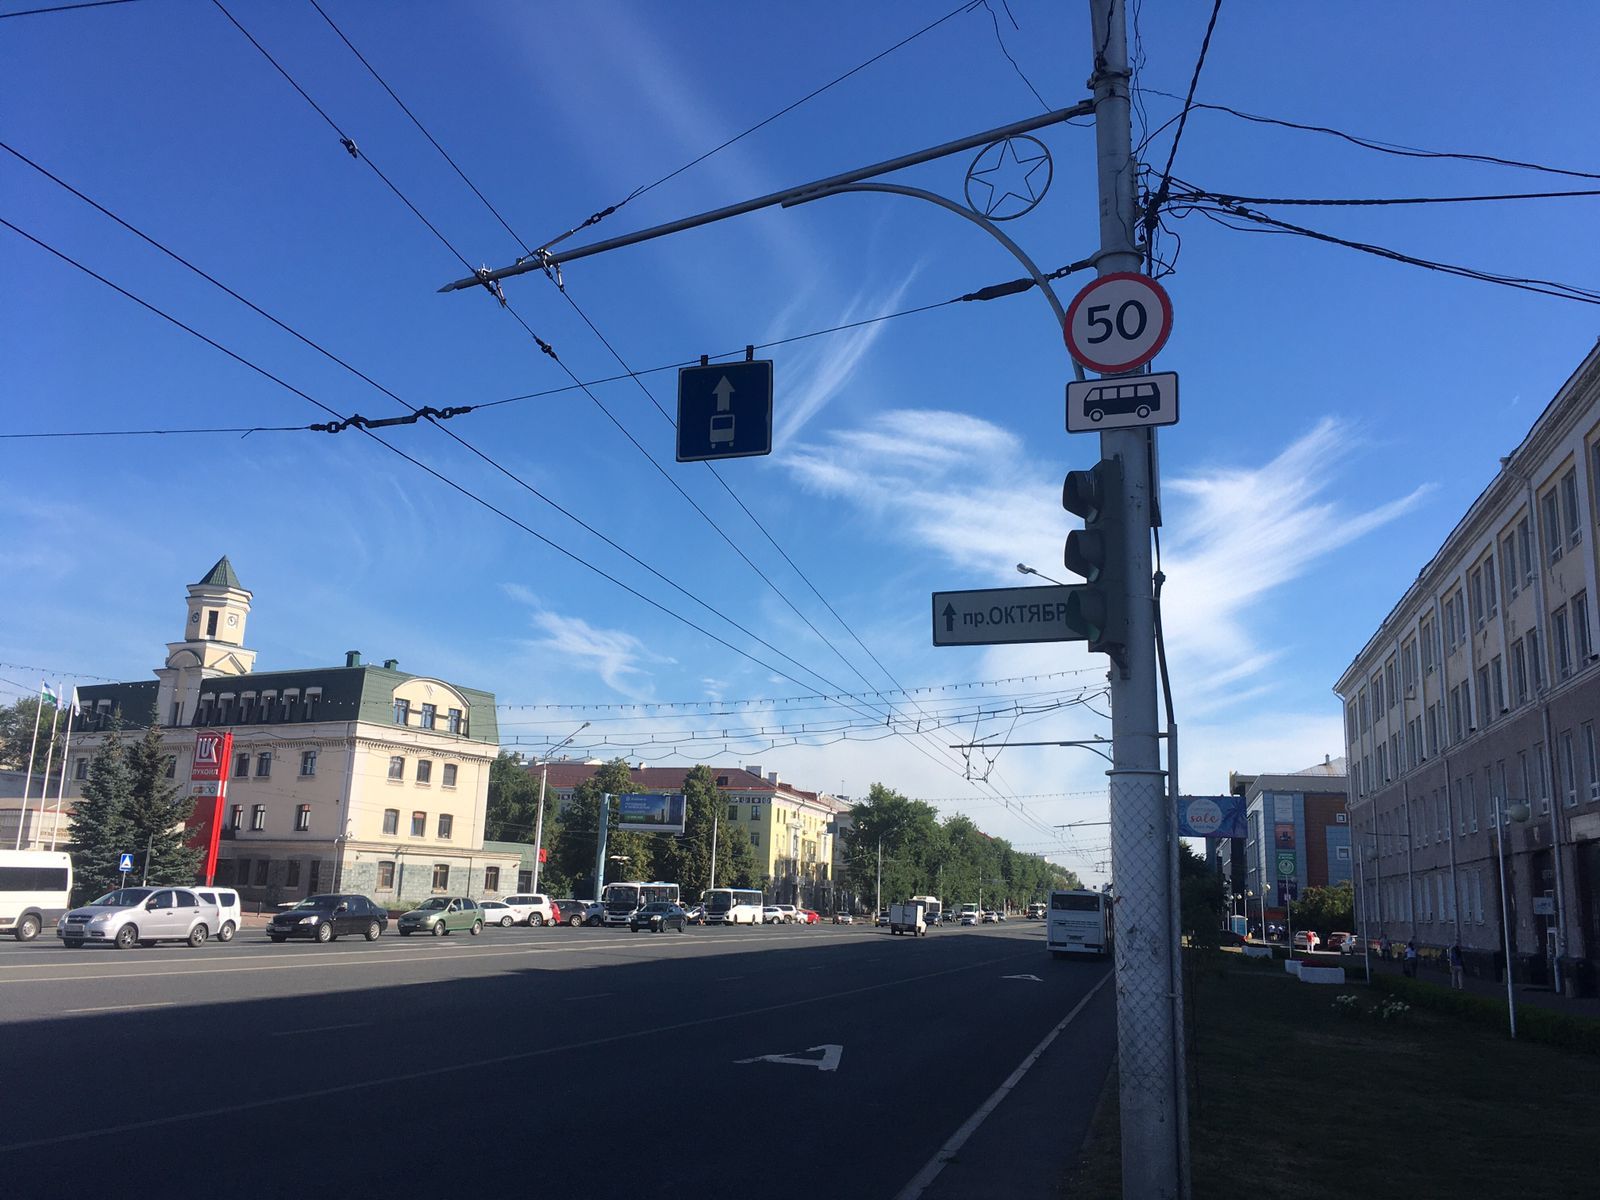 До 50 км/ч: в Уфе устанавливают новые дорожные знаки на проспекте Октября